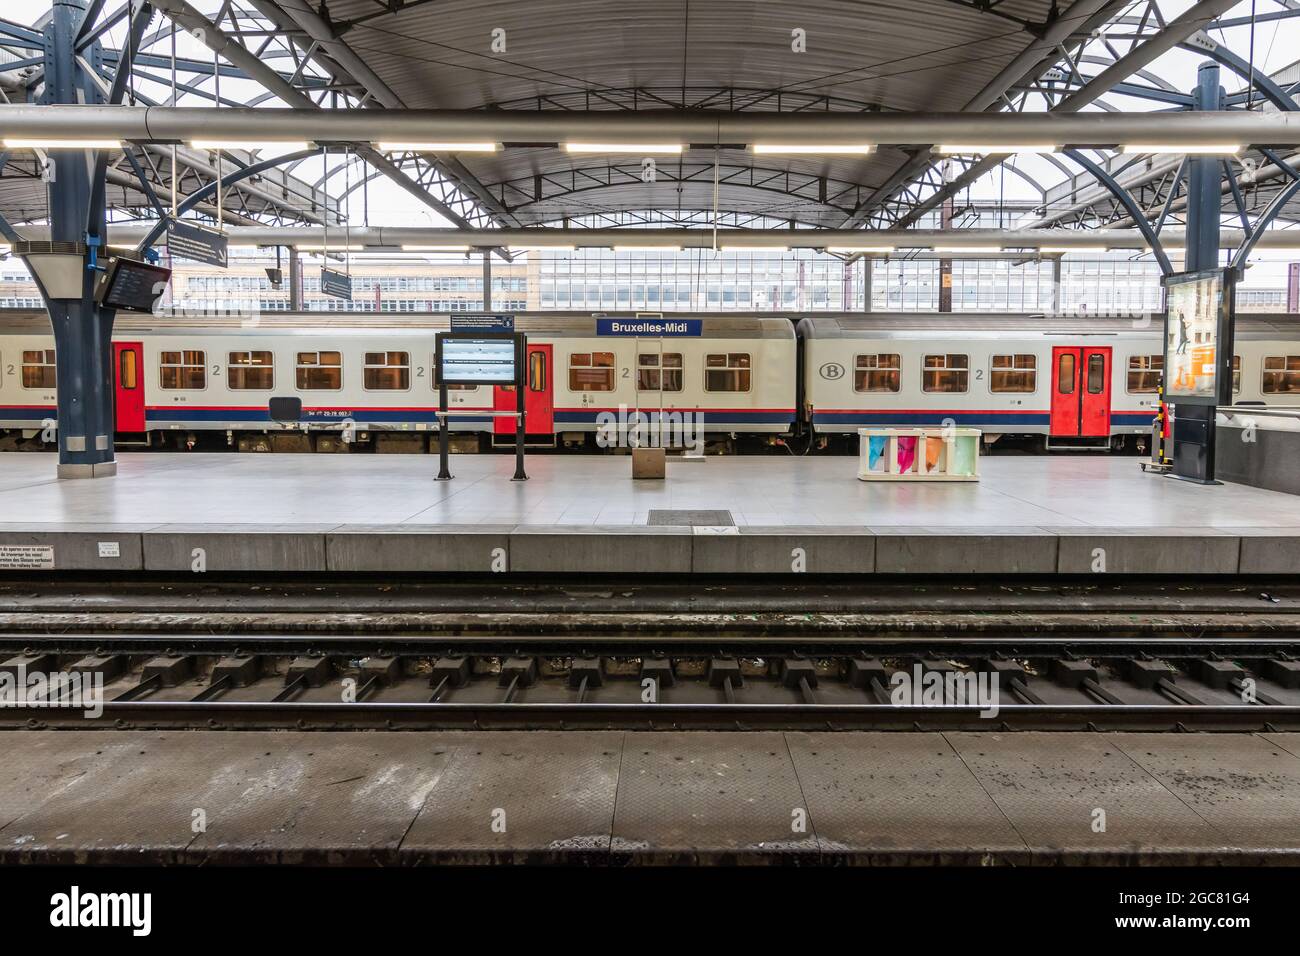 BRUXELLES, BELGIQUE - 12 mars 2019 : train à quai de la gare Bruxelles-Sud ( Bruxelles-midi ou Bruxelles-Zuid Photo Stock - Alamy